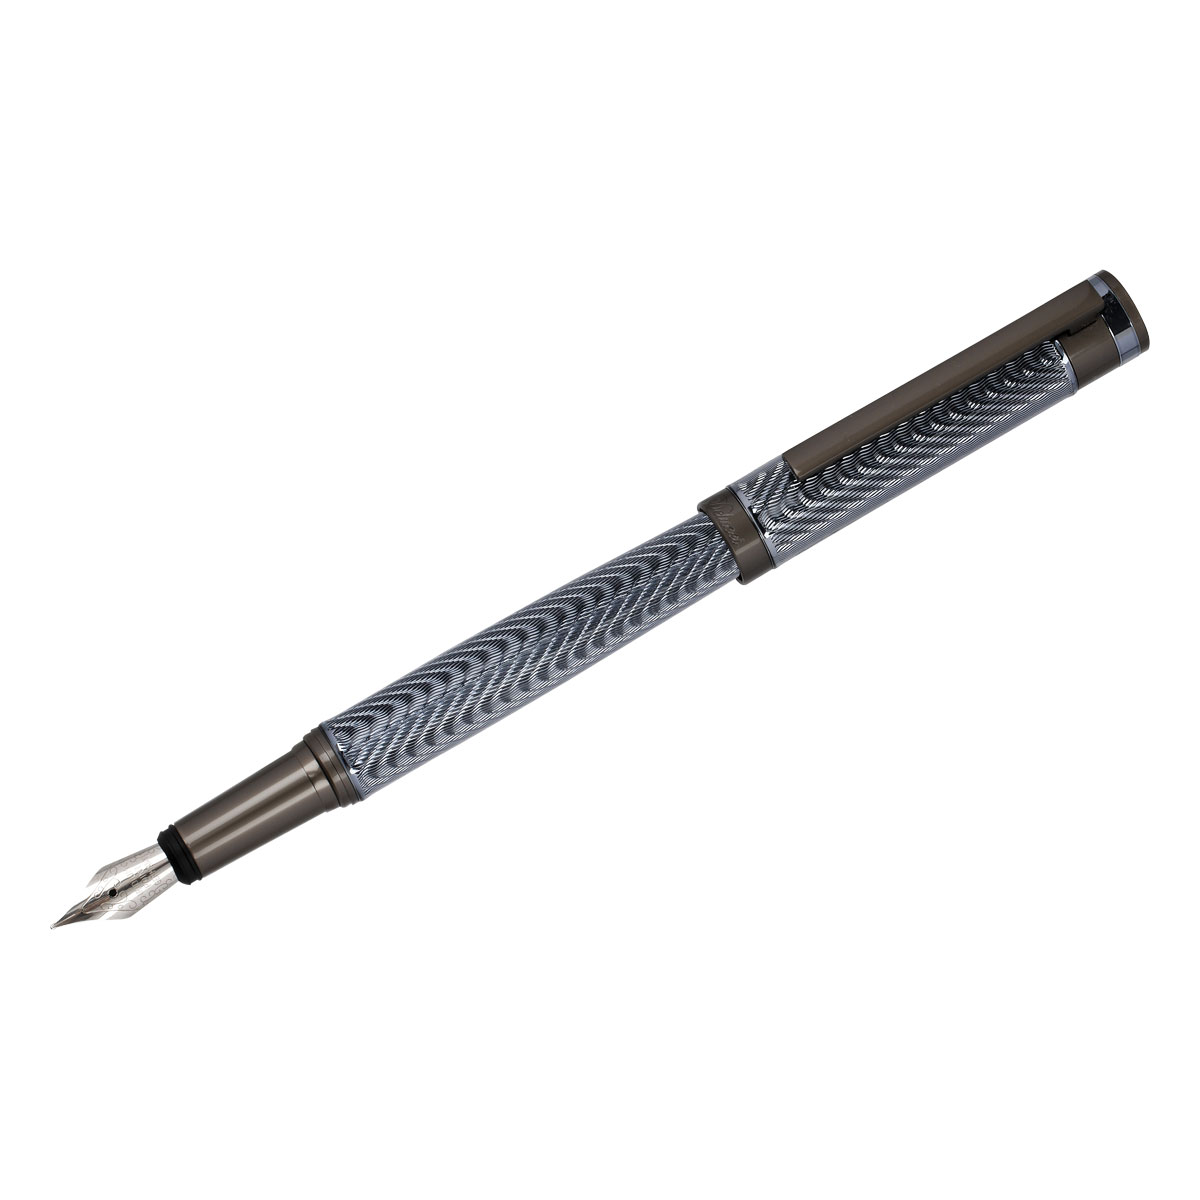 Ручка перьевая Delucci Stellato черная, 0,8мм, корпус серебро/хром, подарочный футляр